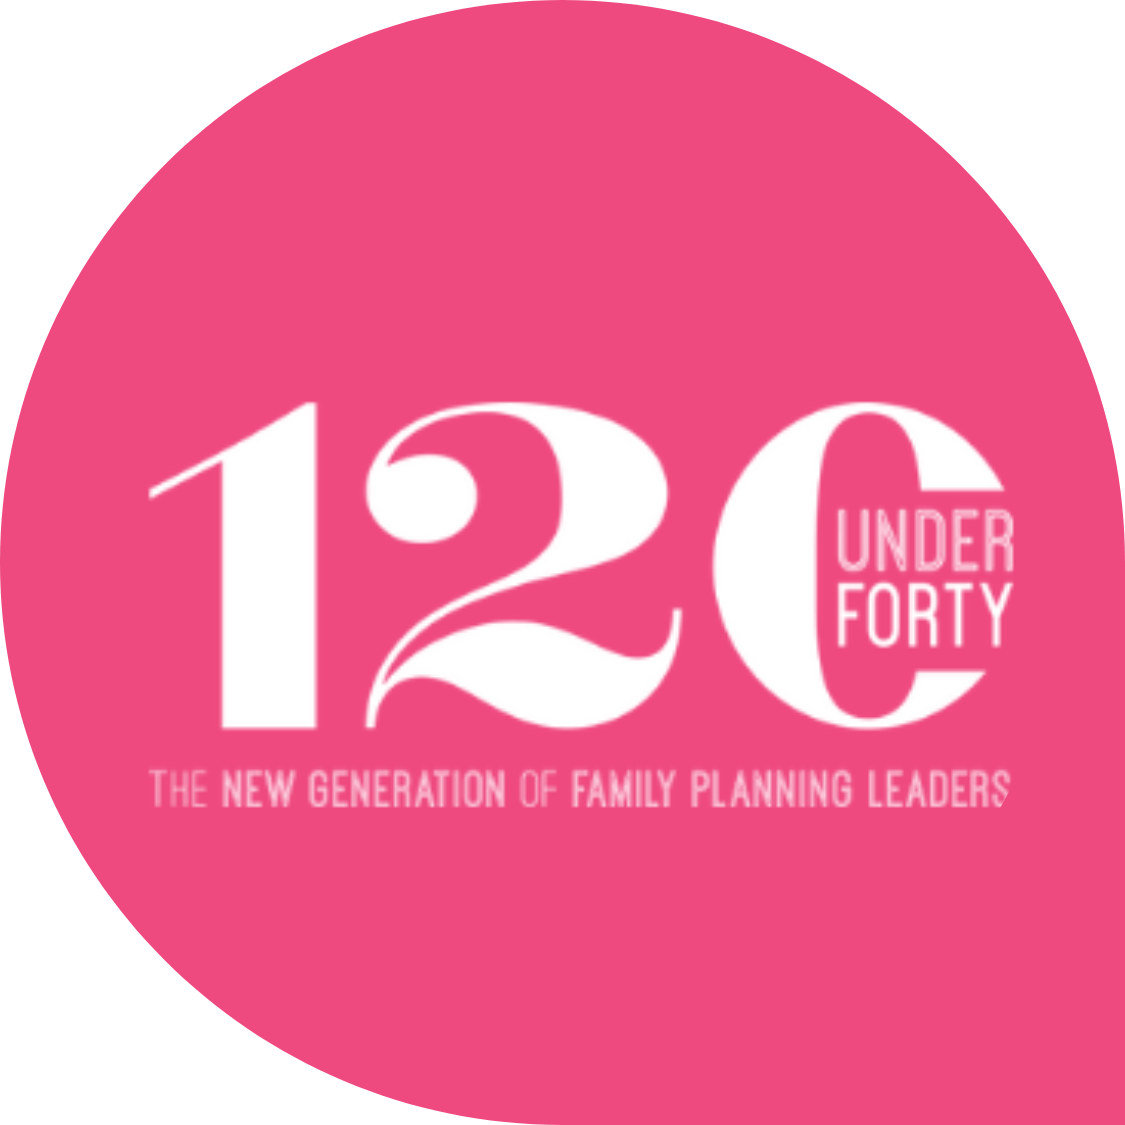 120 menores de 40 años: La próxima generación de líderes en planificación familiar